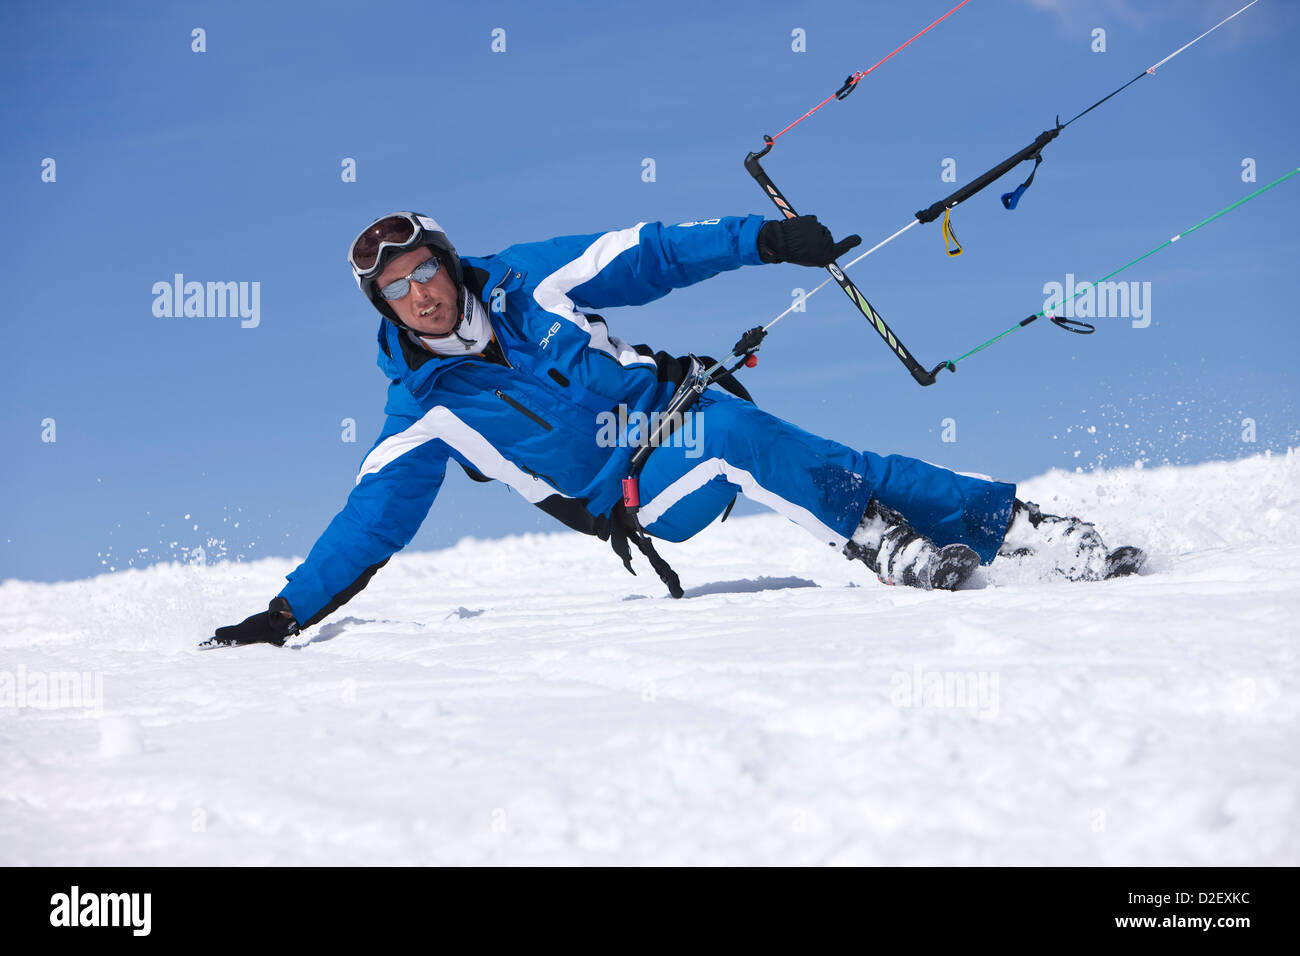 Hombre cometa esquí en azul skiwear, Austria Foto de stock